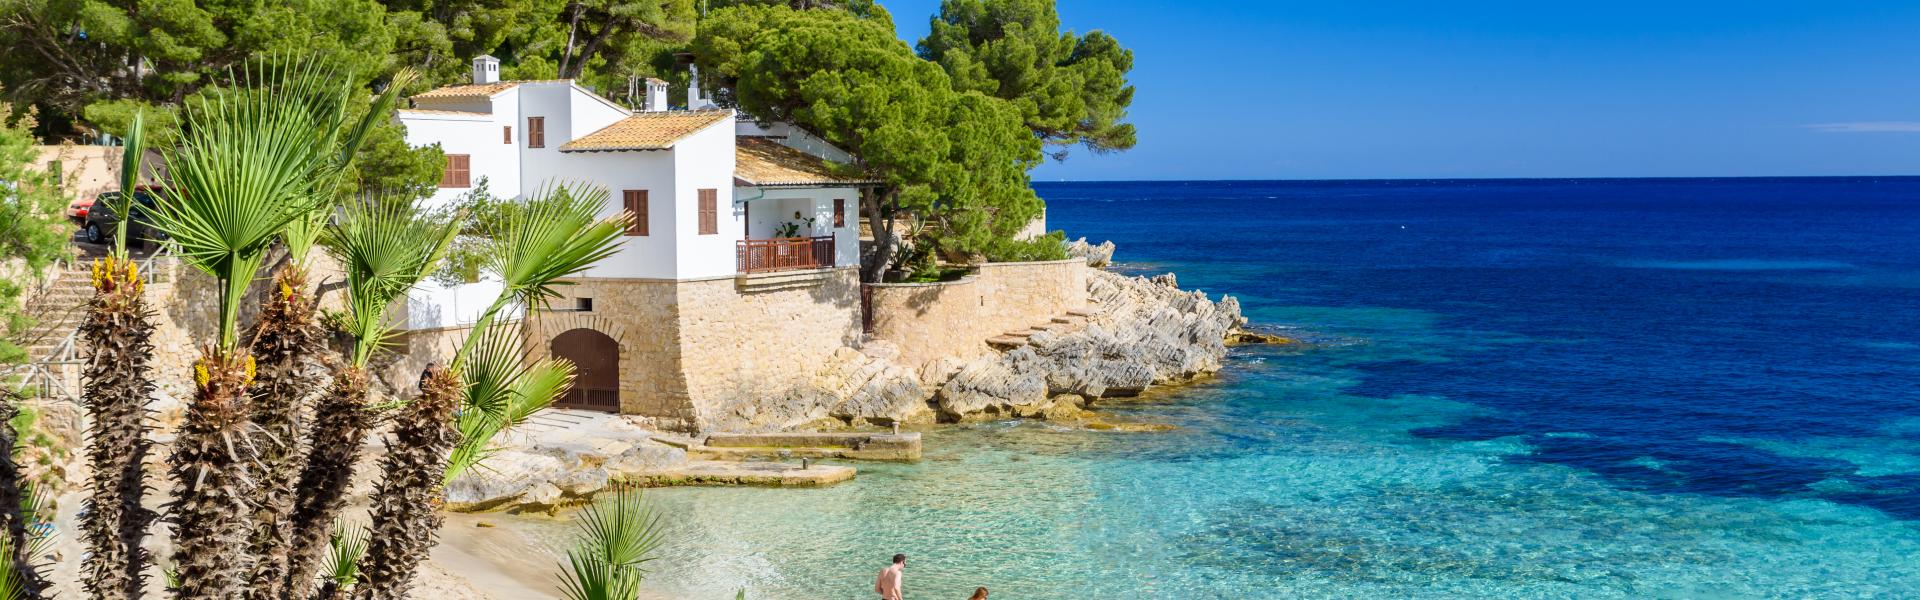 Vakantiehuizen en villa's op Mallorca - HomeToGo